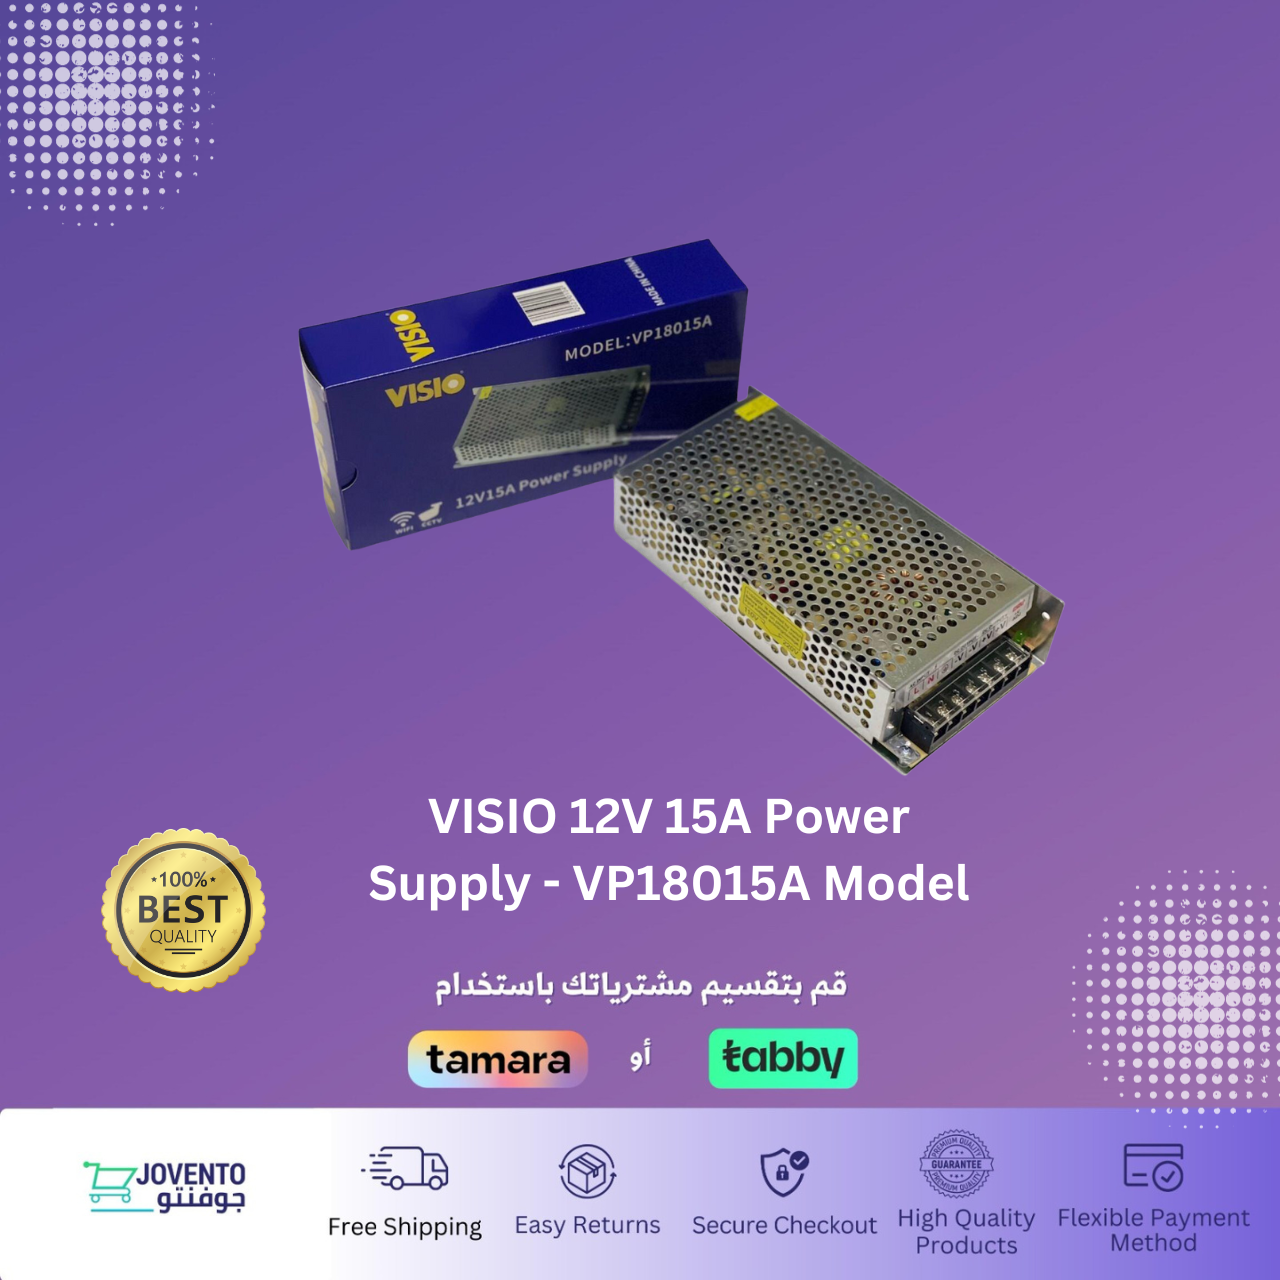 VISIO 12V 15A Power Supply - VP18015A Model